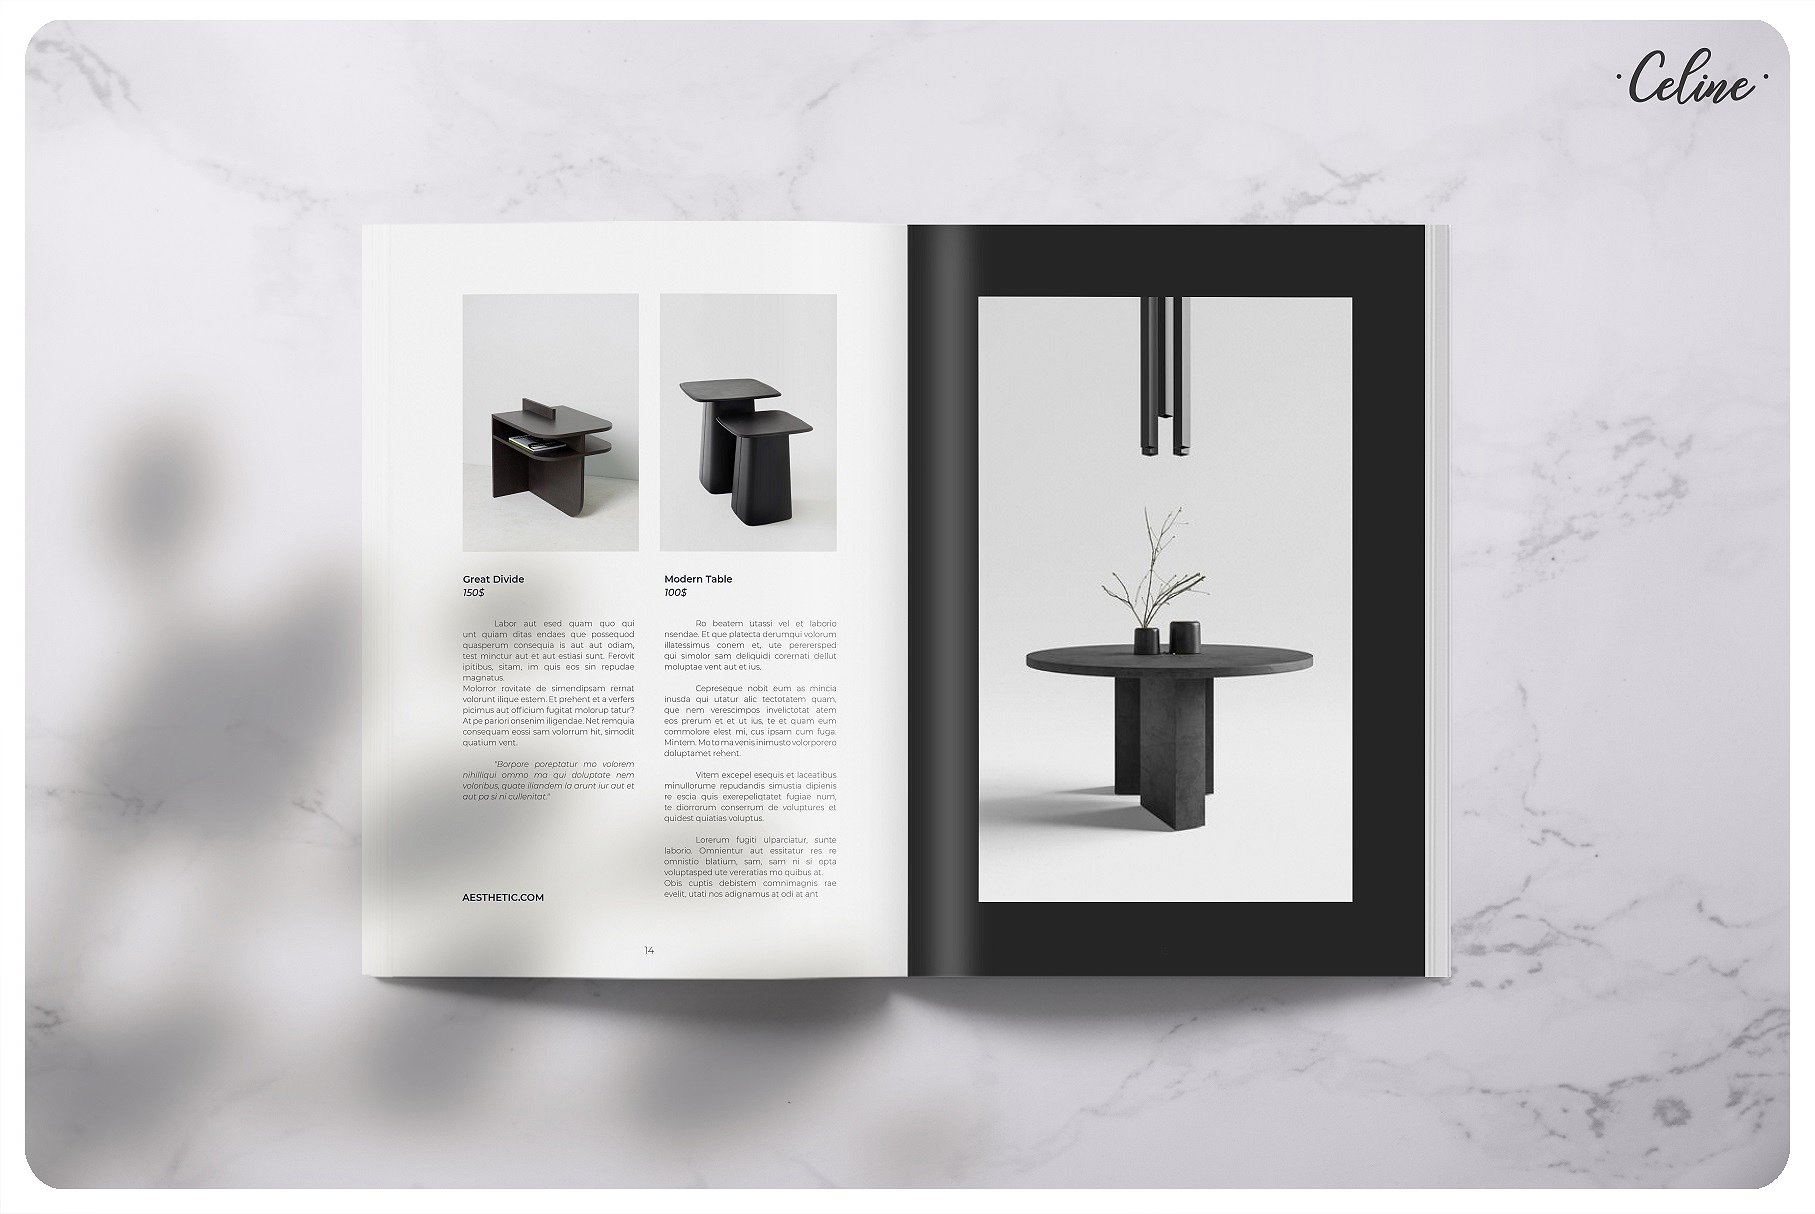 时尚家具设计产品促销A4画册杂志Indesign模板 Fashion Furniture Design Product Promotion A4 Album Magazine Indesign Template插图3